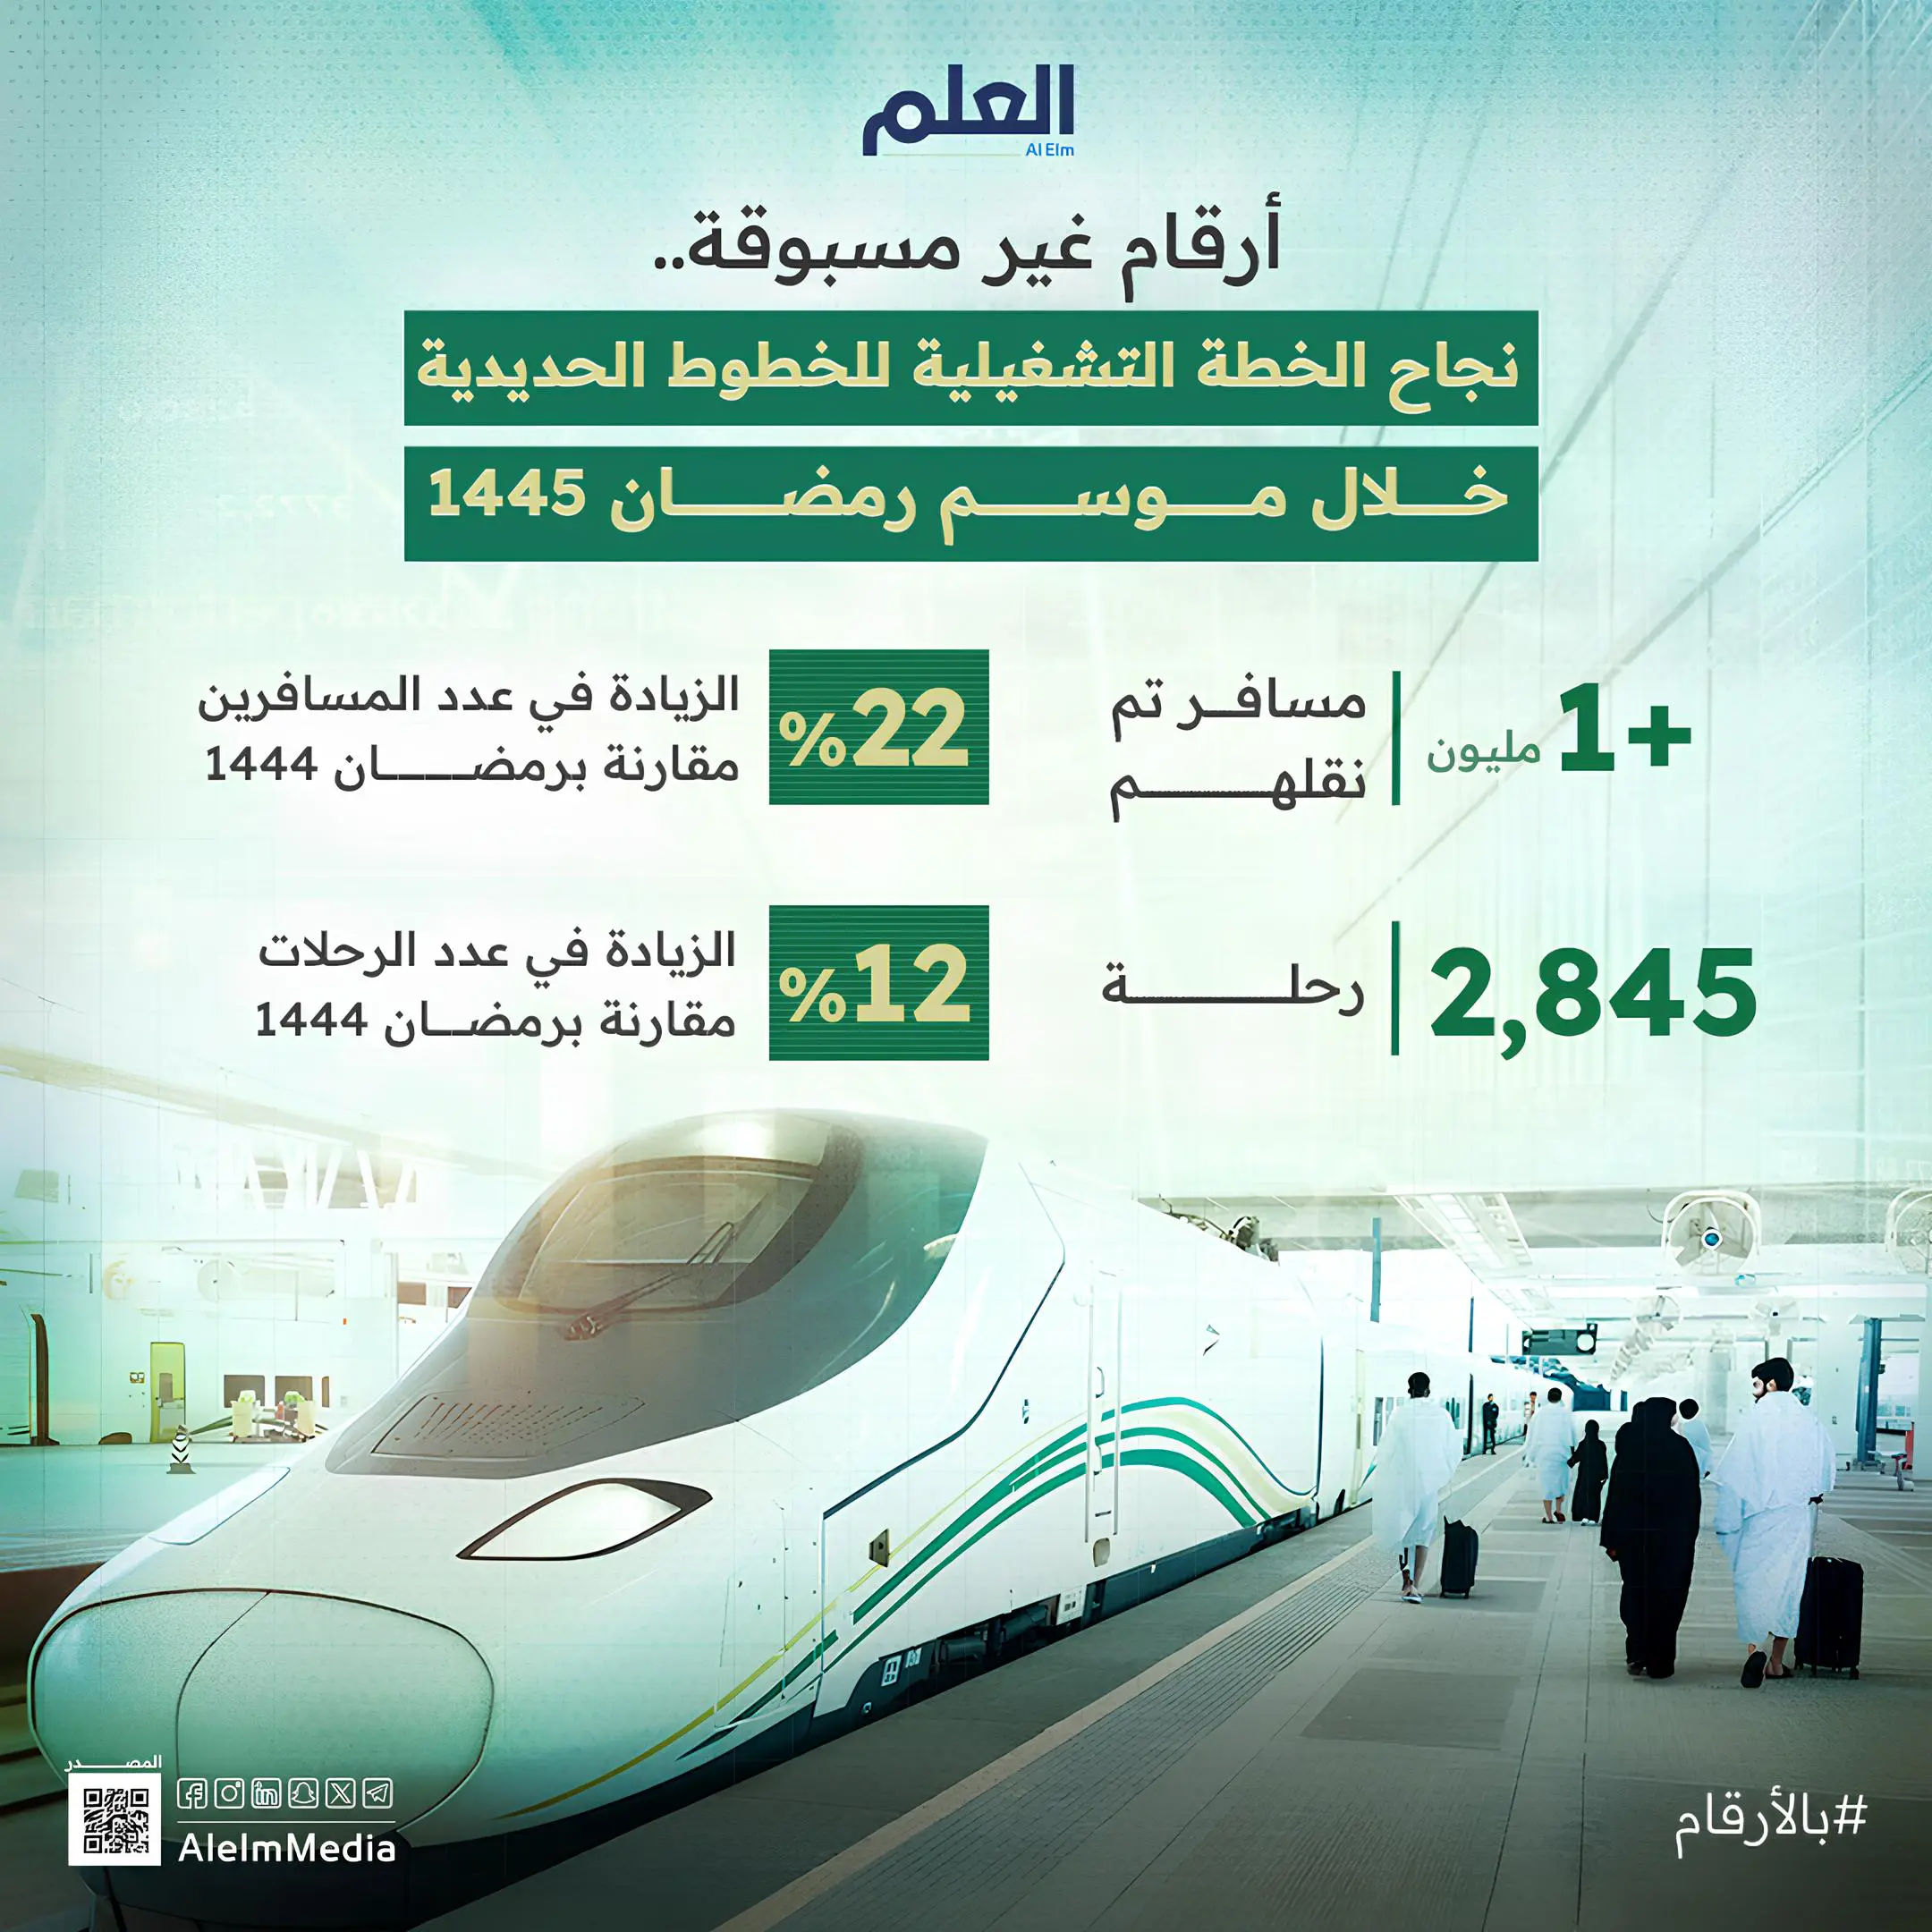 نجاح الخطة التشغيلية للخطوط الحديدية خلال موسم رمضان